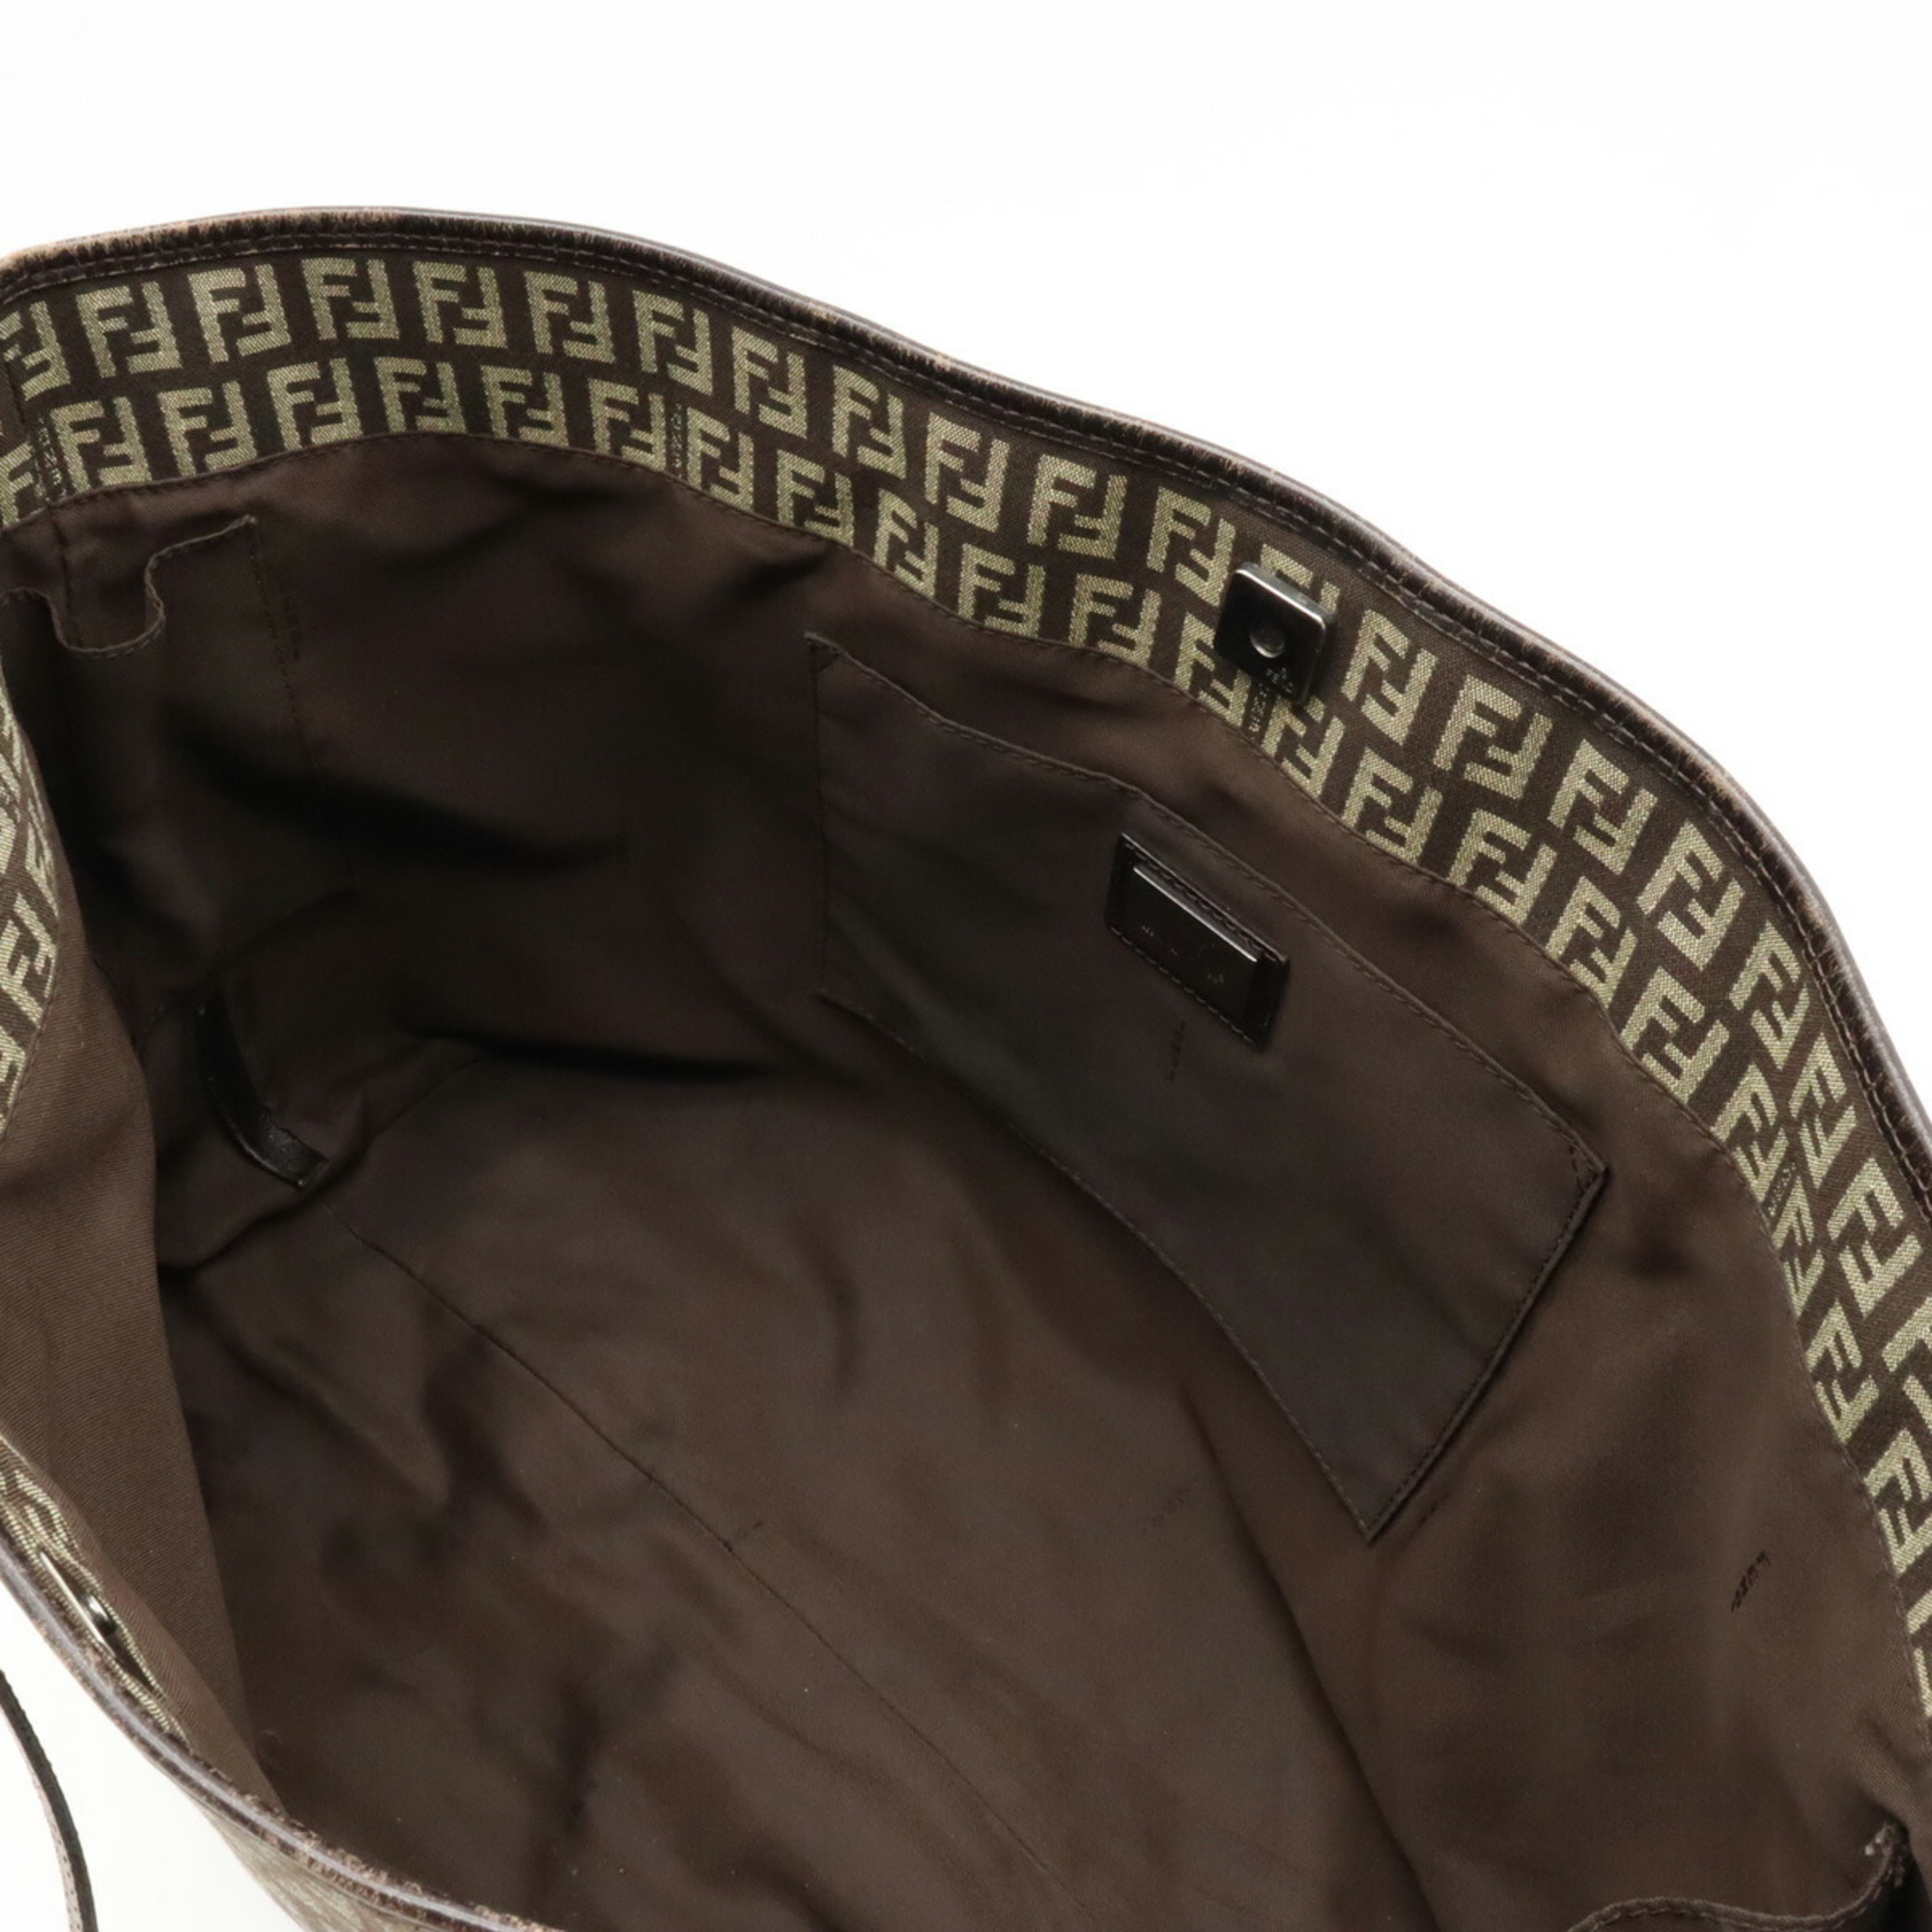 FENDI Zucchino Zucca pattern tote bag shoulder canvas leather dark brown beige 8BH104